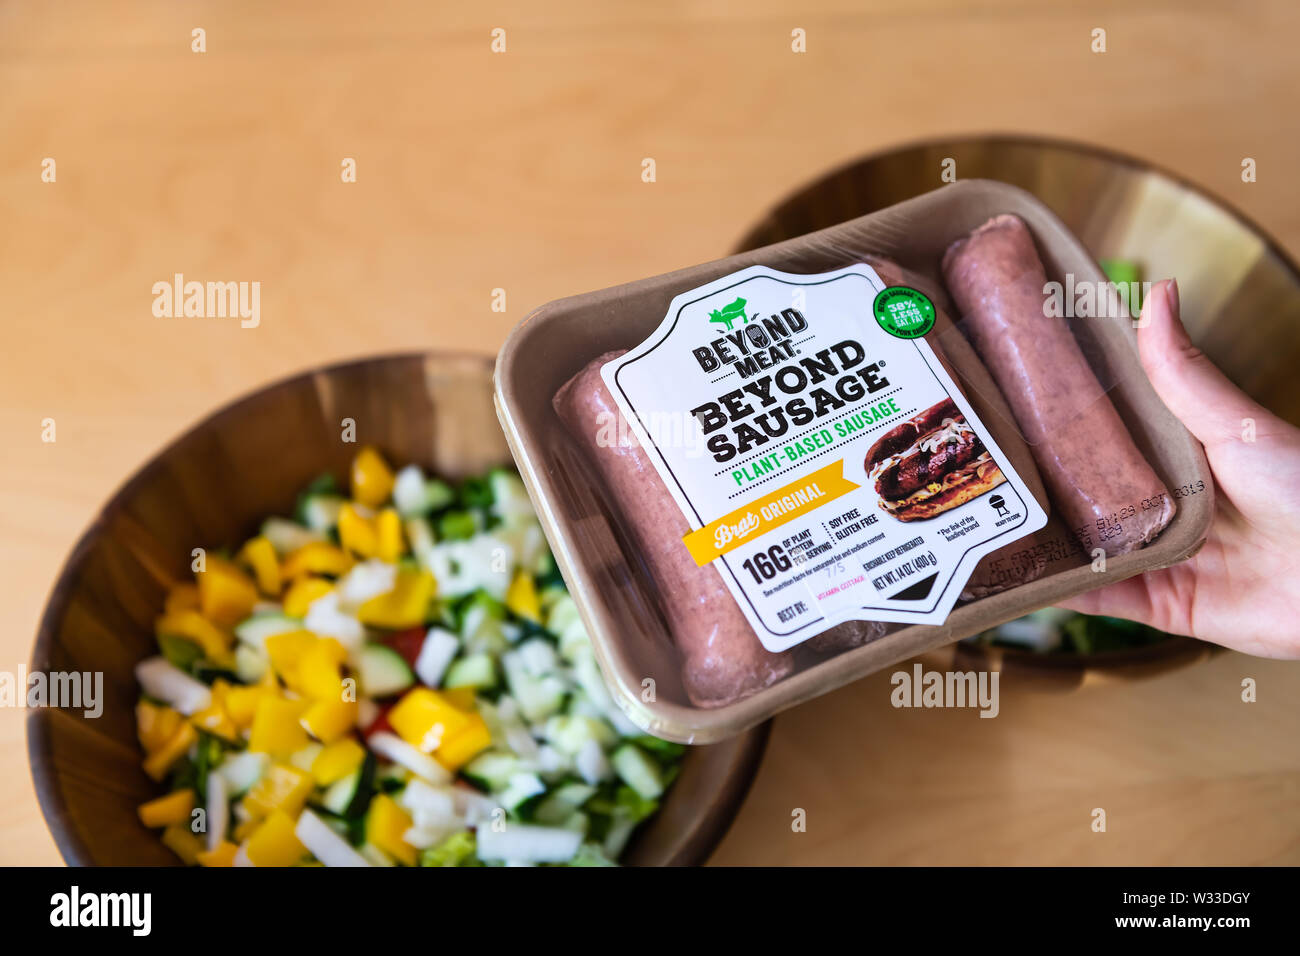 Aspen, USA - 29. Juni 2019: Über Fleisch Wurst pflanzliche Protein Brat original Paket mit Frau mit Marke durch den Salat Schüsseln Stockfoto